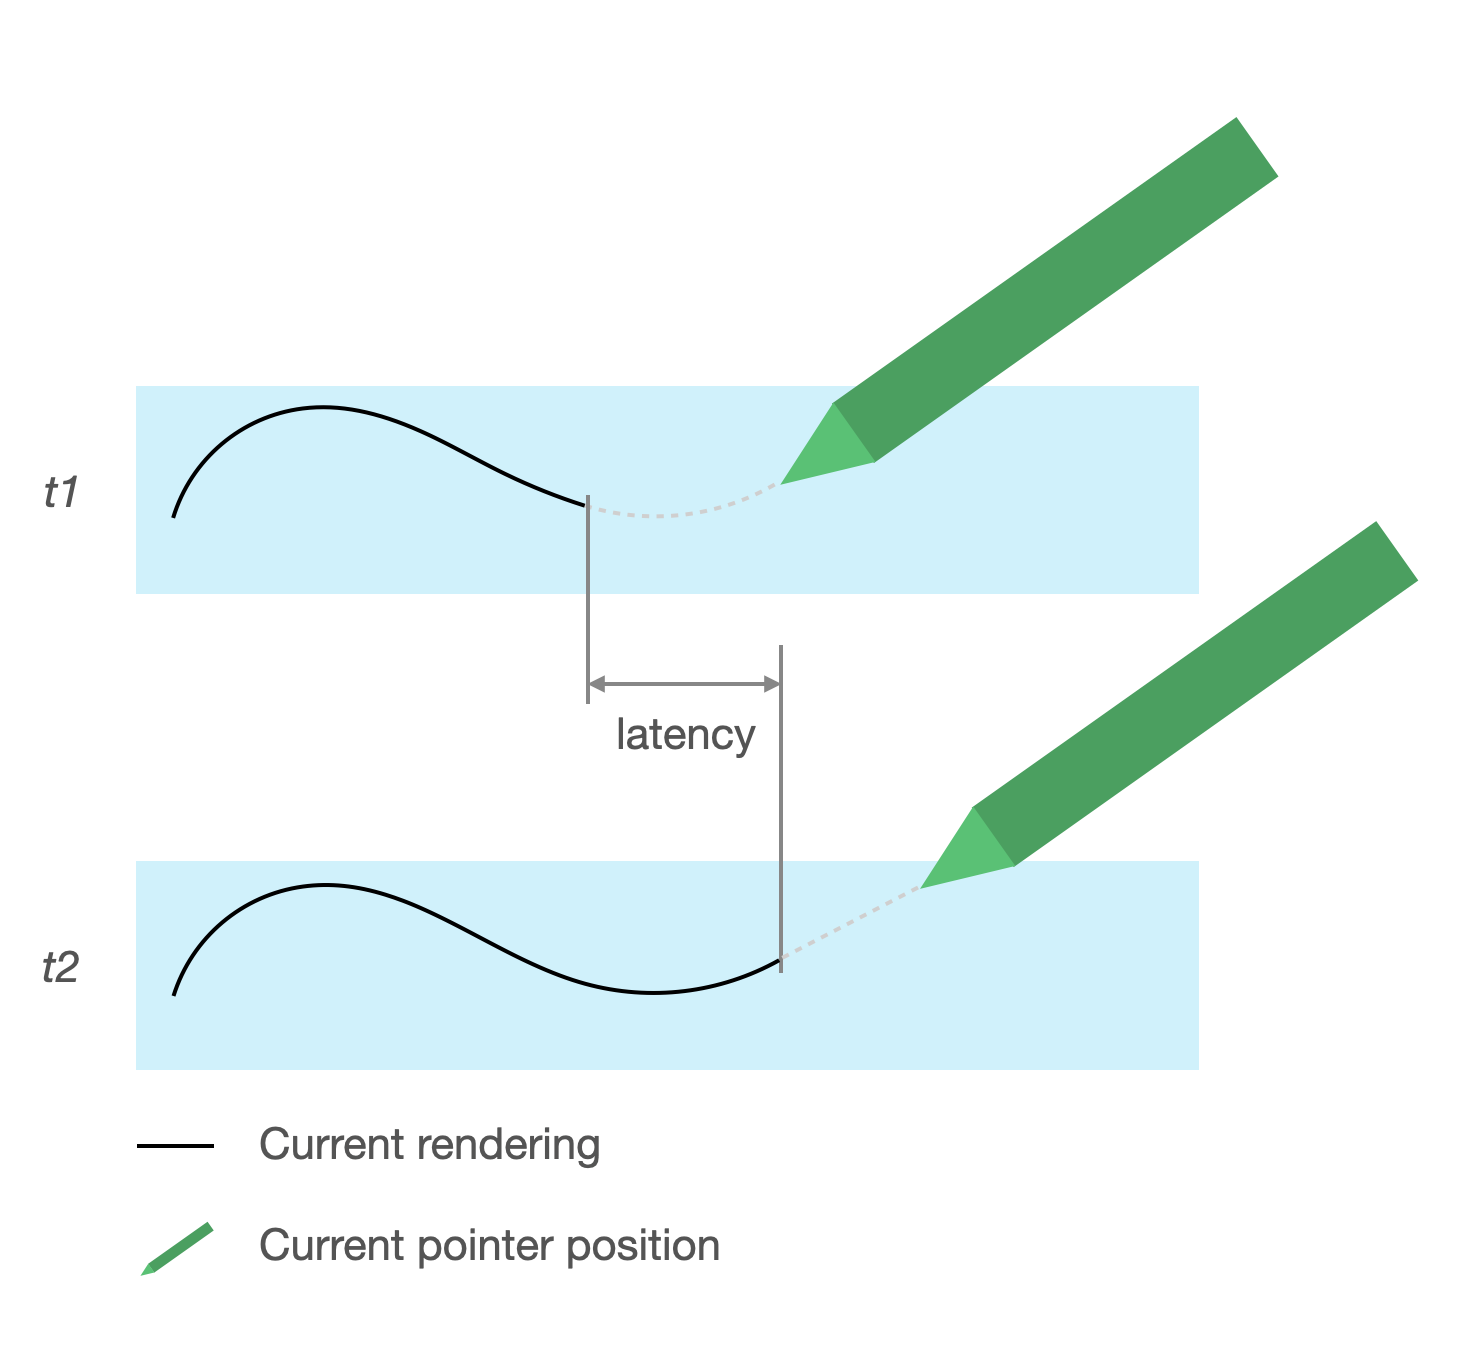 La latenza causa un ritardo del tratto visualizzato rispetto alla posizione dello stilo. Lo spazio tra il tratto visualizzato e la posizione dello stilo rappresenta la latenza.